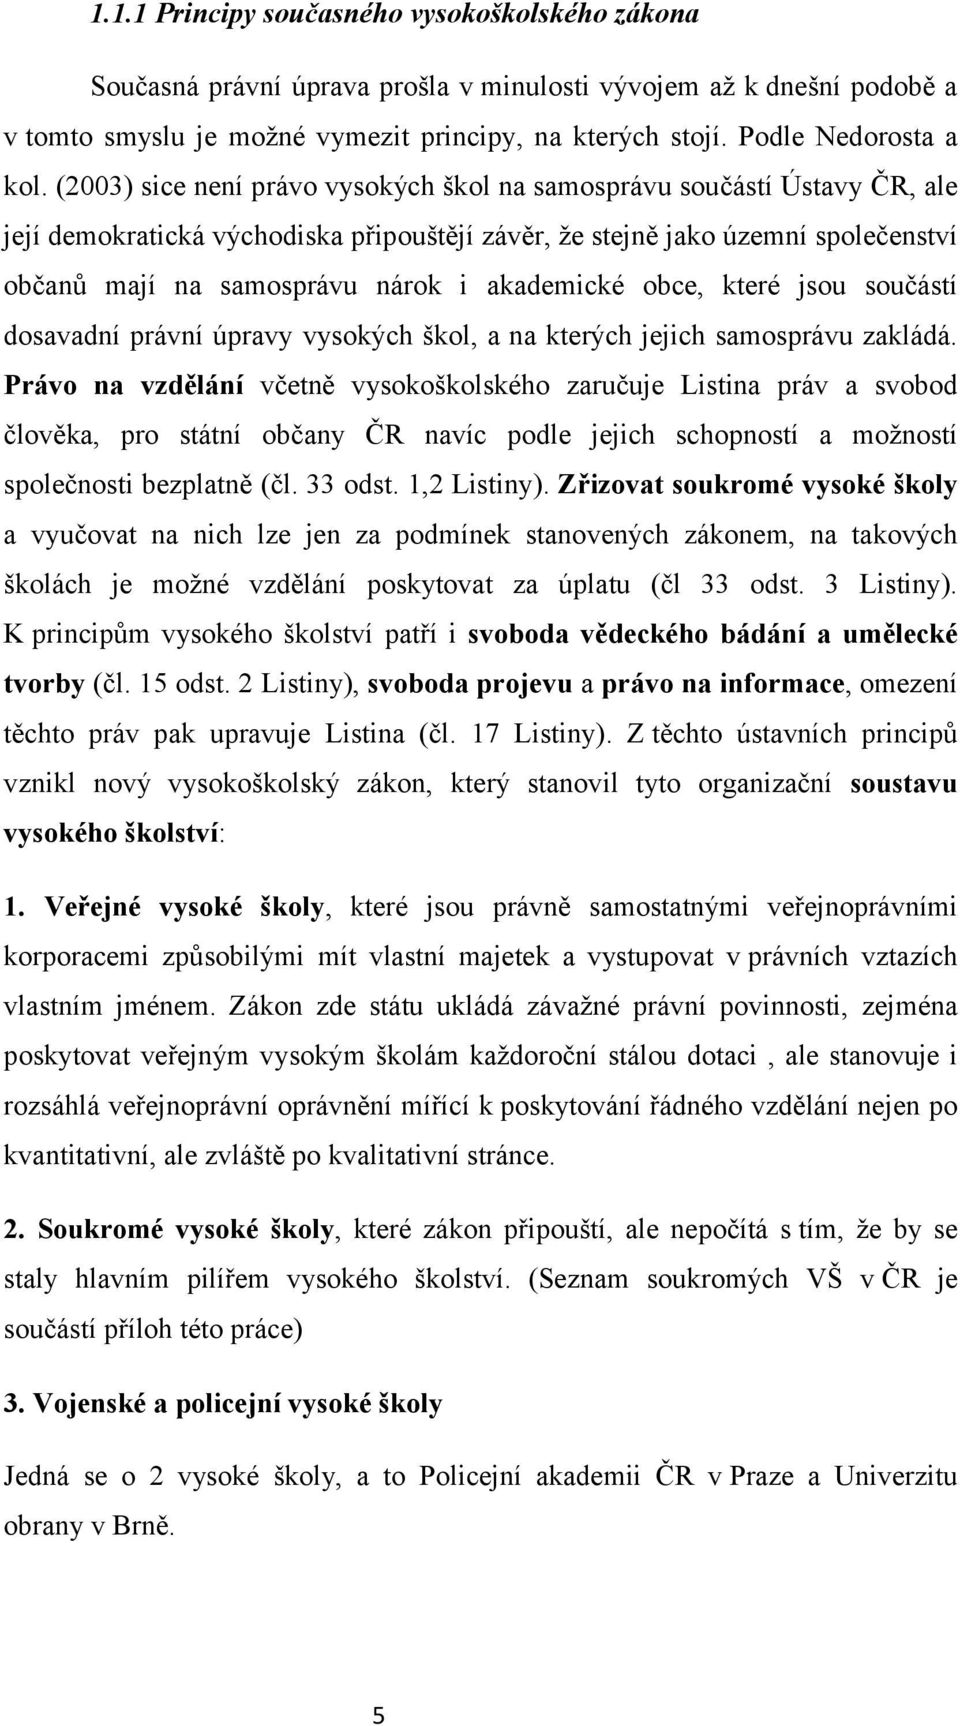 (2003) sice není právo vysokých škol na samosprávu součástí Ústavy ČR, ale její demokratická východiska připouštějí závěr, že stejně jako územní společenství občanů mají na samosprávu nárok i